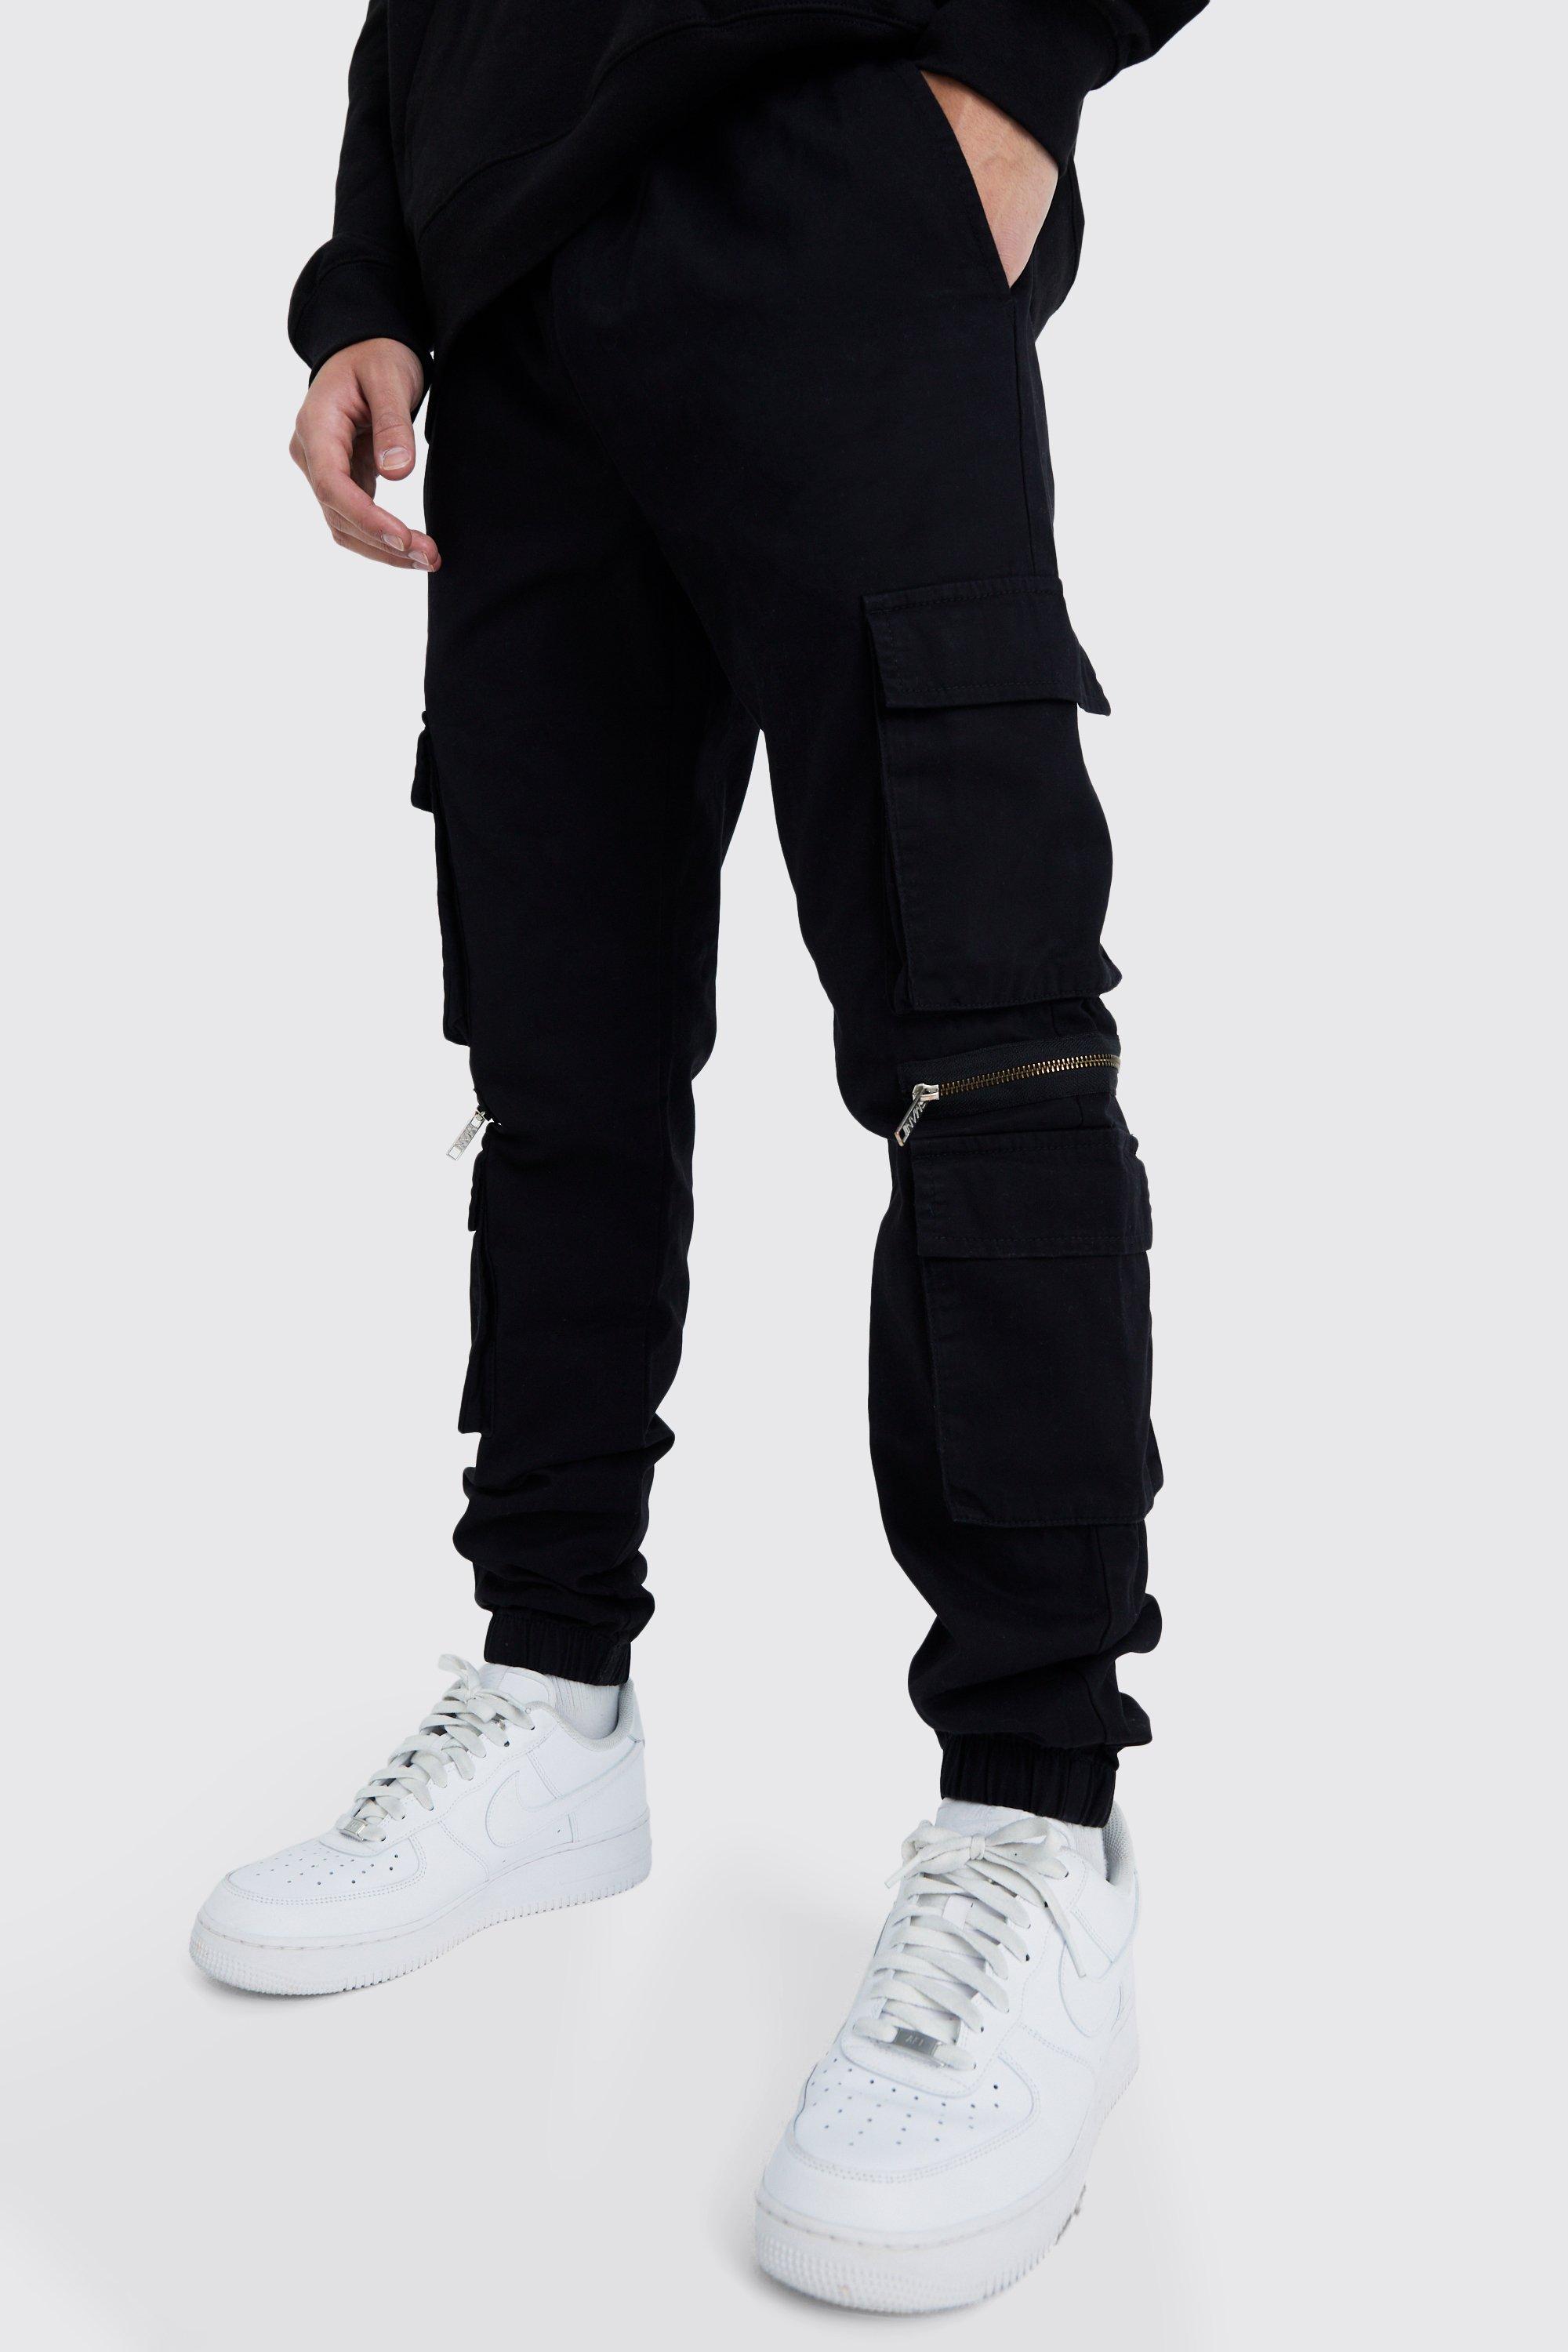 Mens Black Elastic Waist Multi Pocket Zip Cargo Trouser, Black